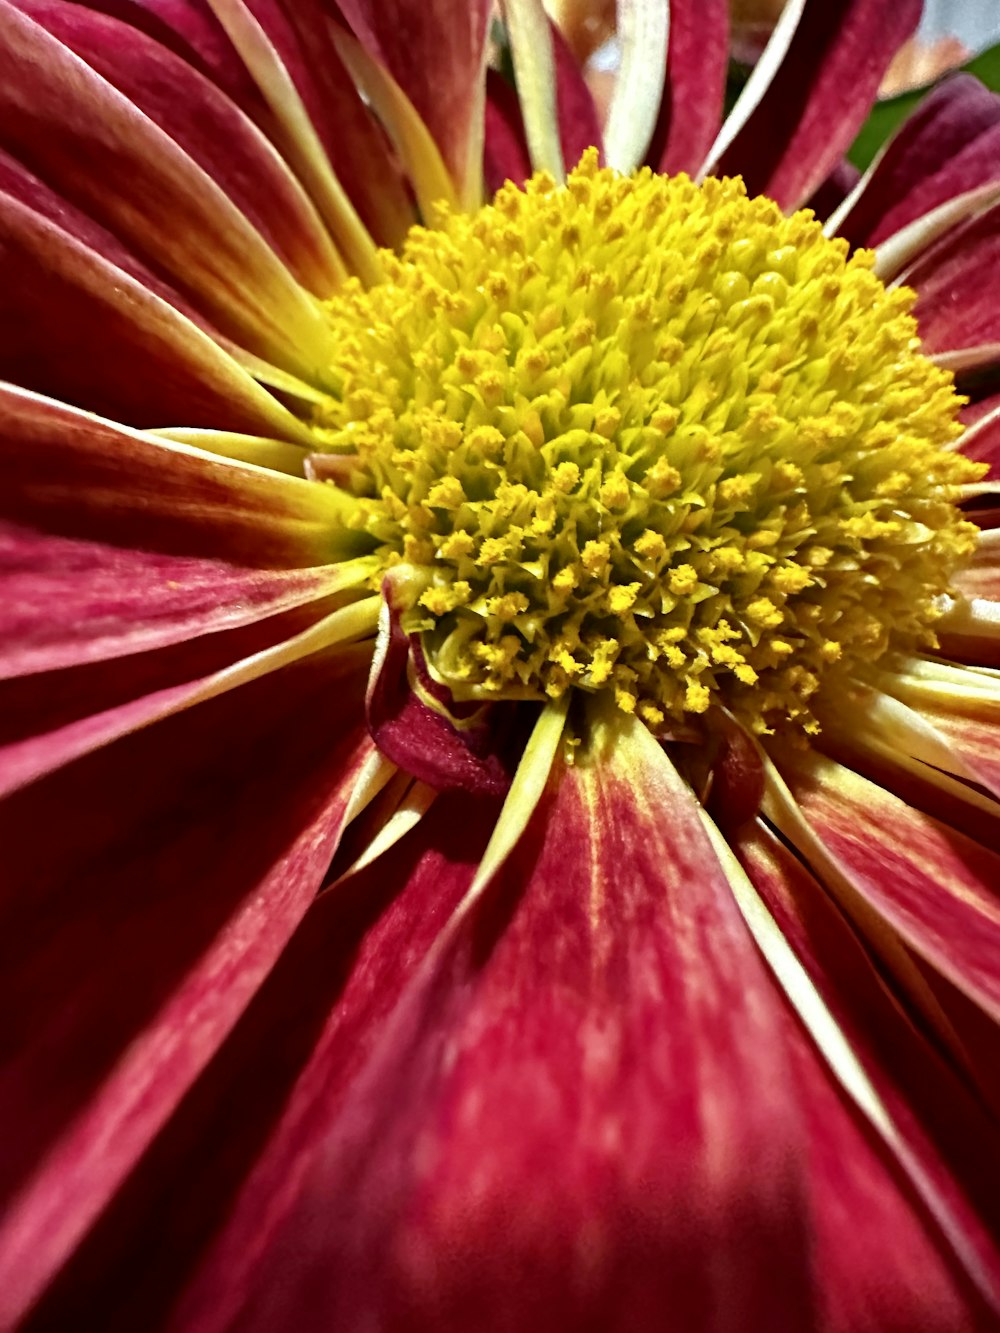 um close up de uma flor vermelha e amarela